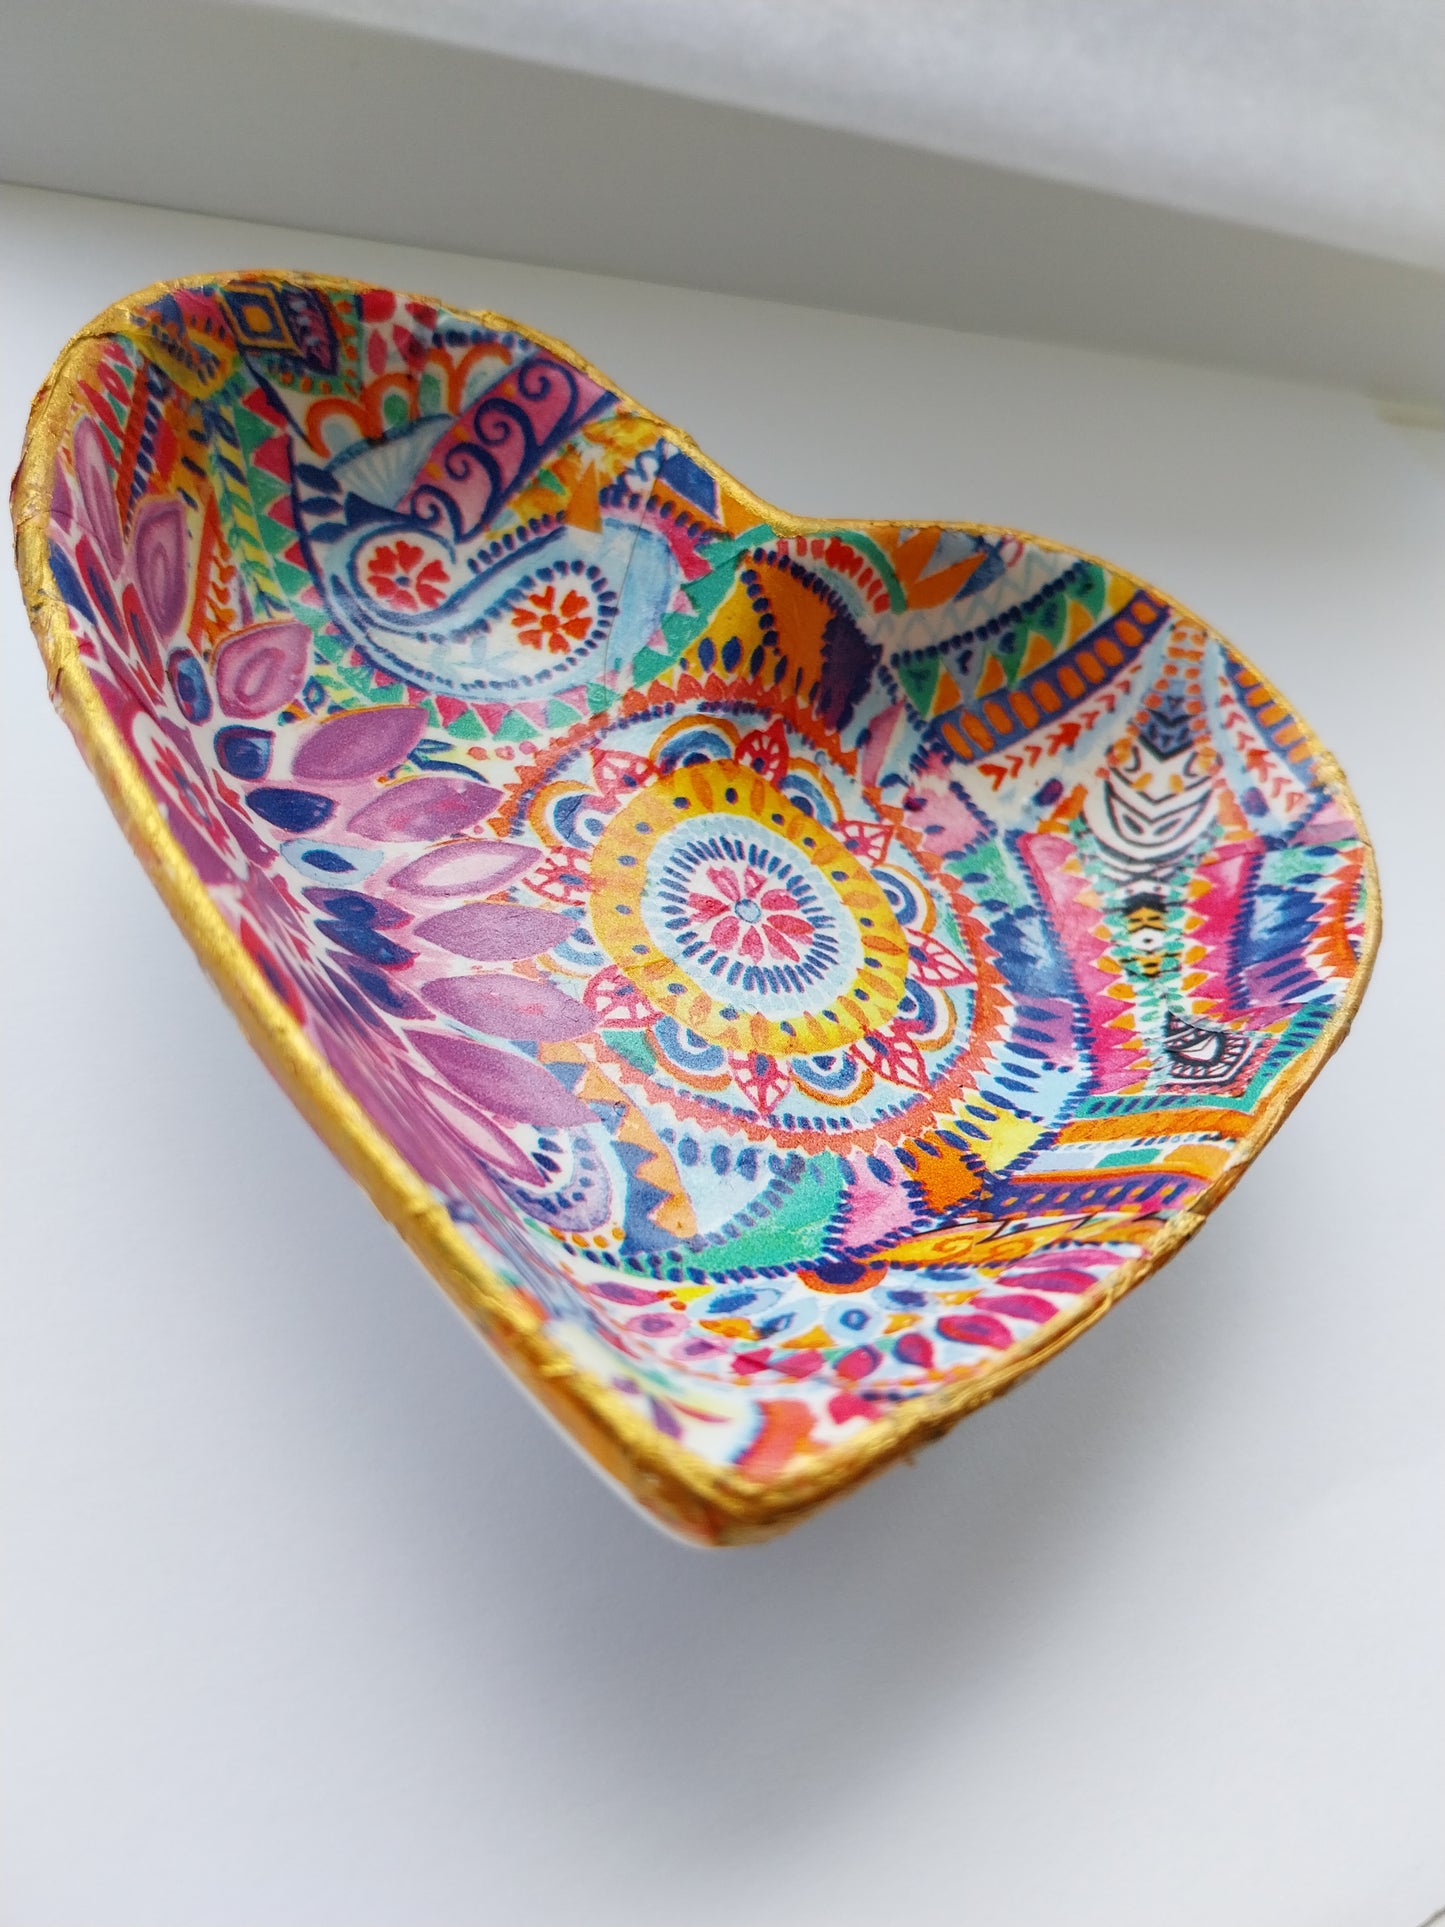 Arty Heart Shaped Trinket Dish